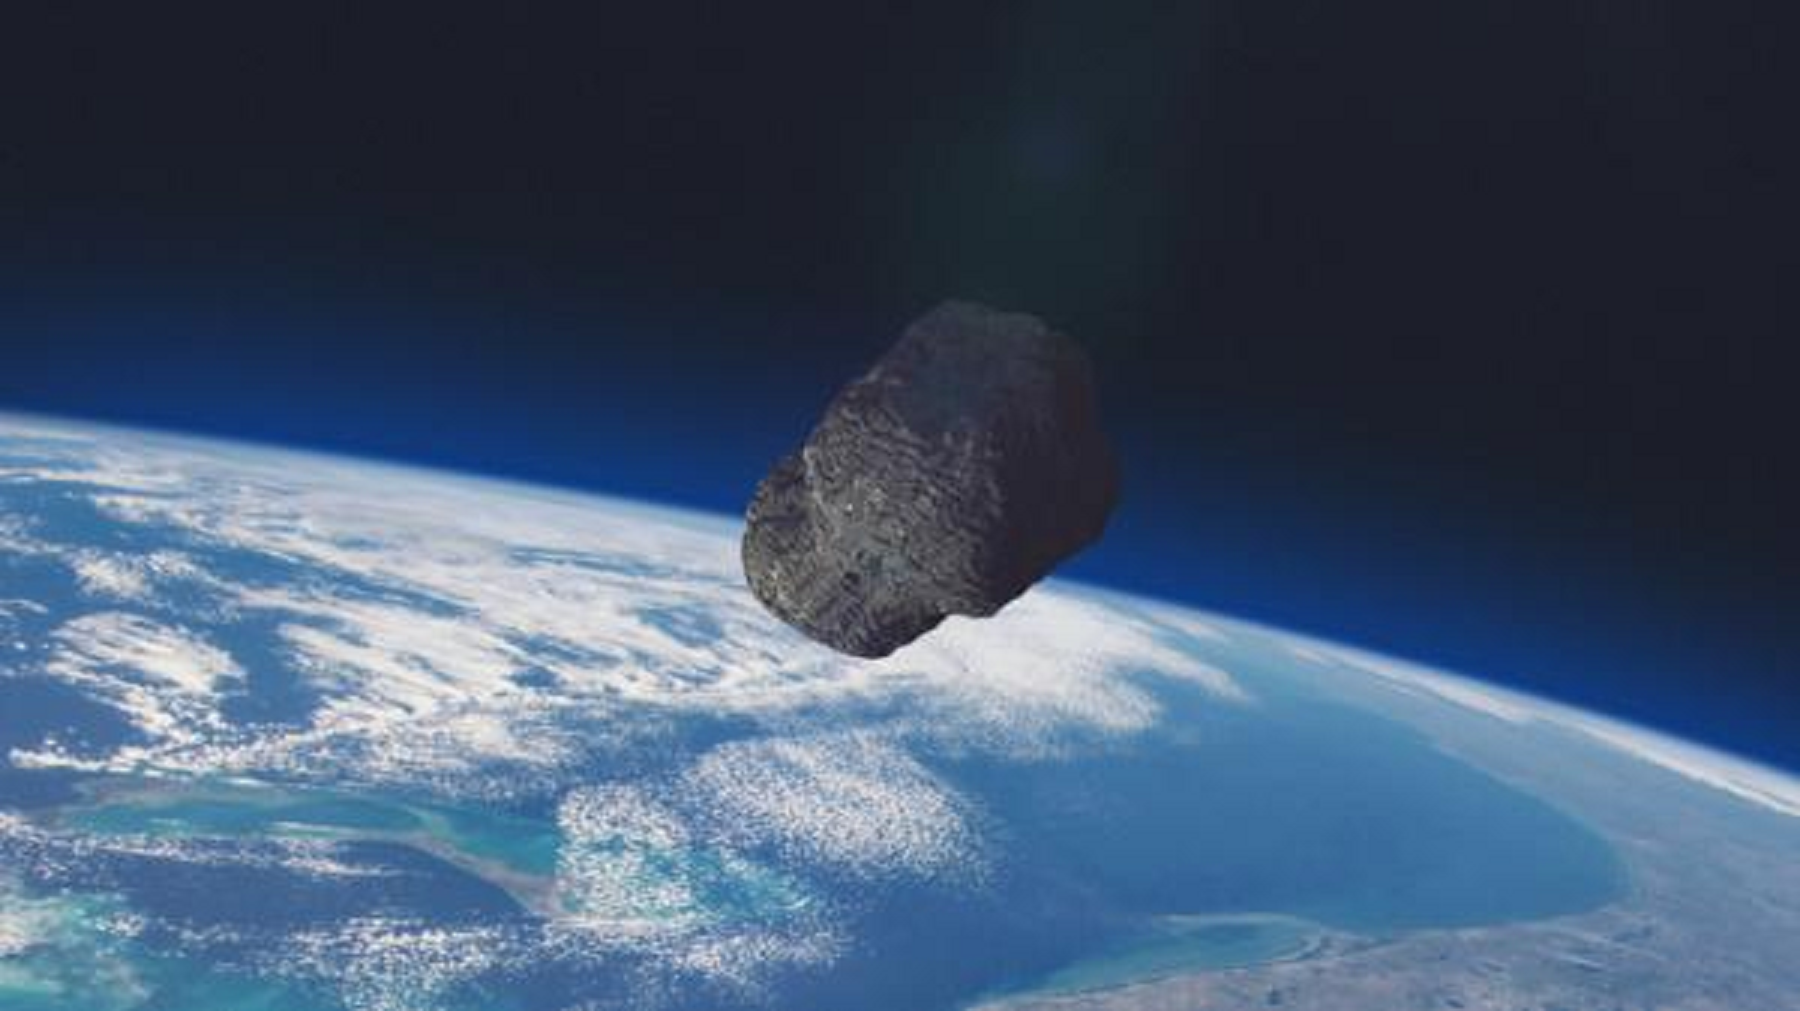 Entérate: 2 asteroides gigantes se acercan a la Tierra